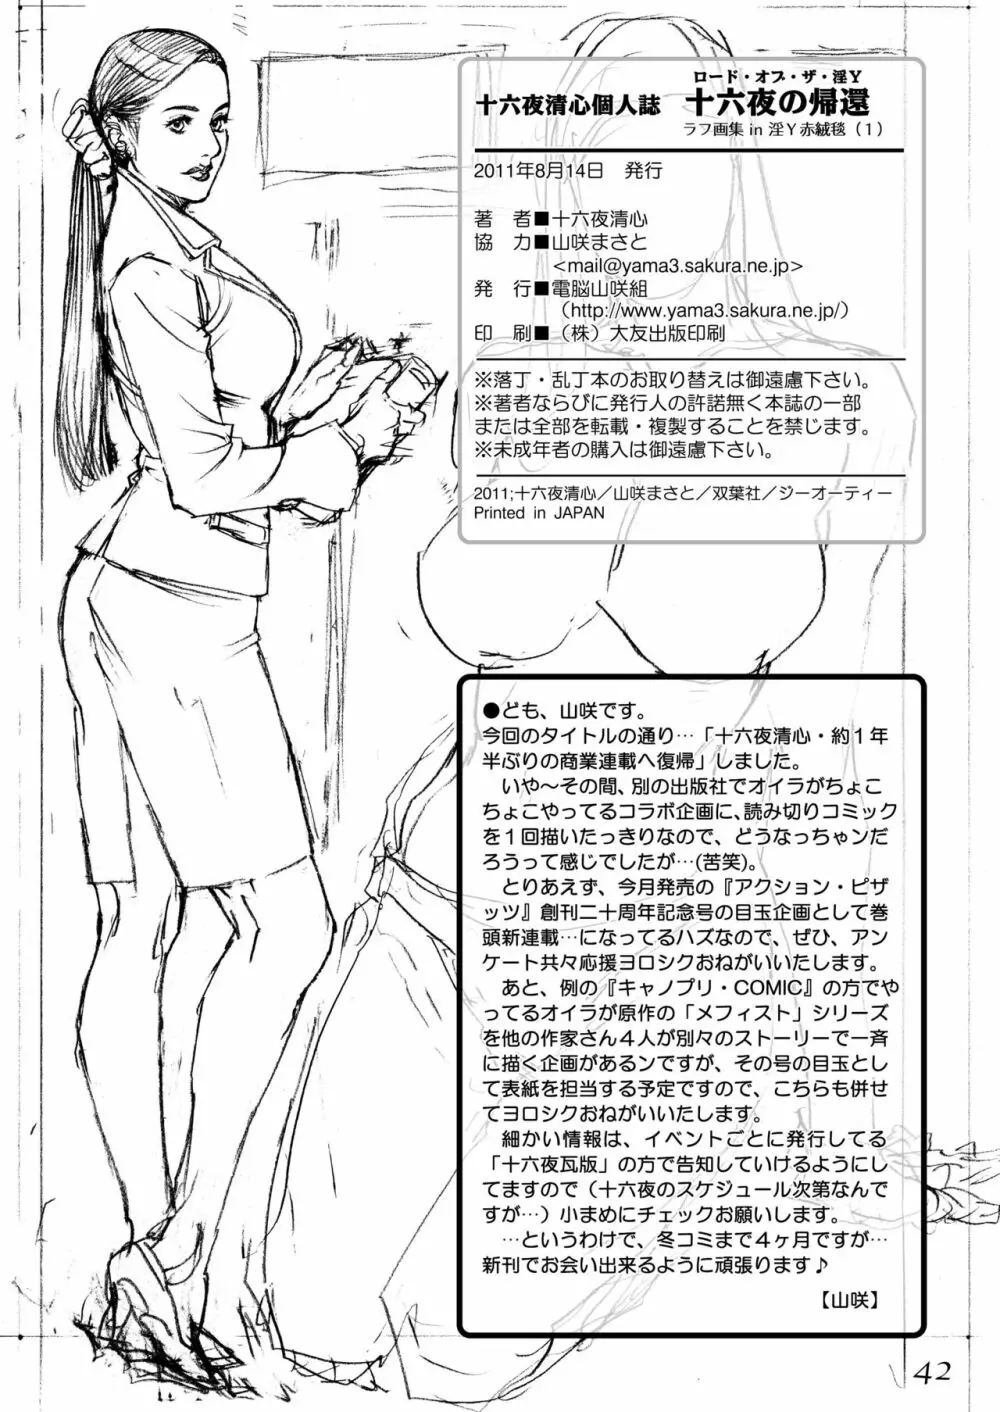 ロード・オブ・ザ・淫Y 十六夜の帰還 ラフ画集 in 淫Y赤絨毯（1） 41ページ